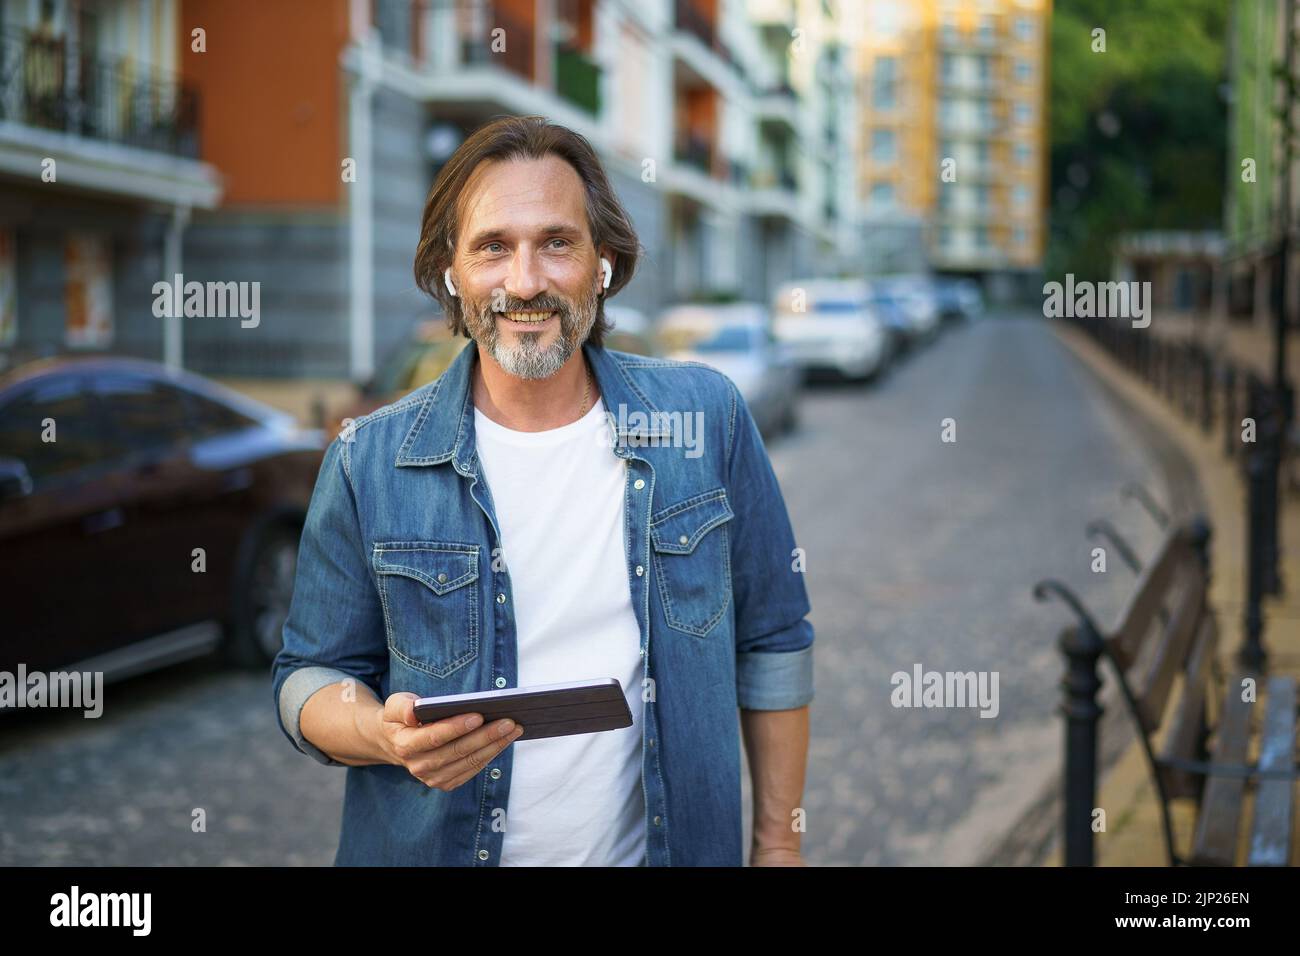 Un travailleur indépendant gris d'âge moyen tient une tablette numérique dans les mains pour passer un appel tout en restant dans les rues urbaines. Homme mature parlant ou écoutant de la musique utilisez des écouteurs sans fil pour voyager dans la vieille ville. Banque D'Images